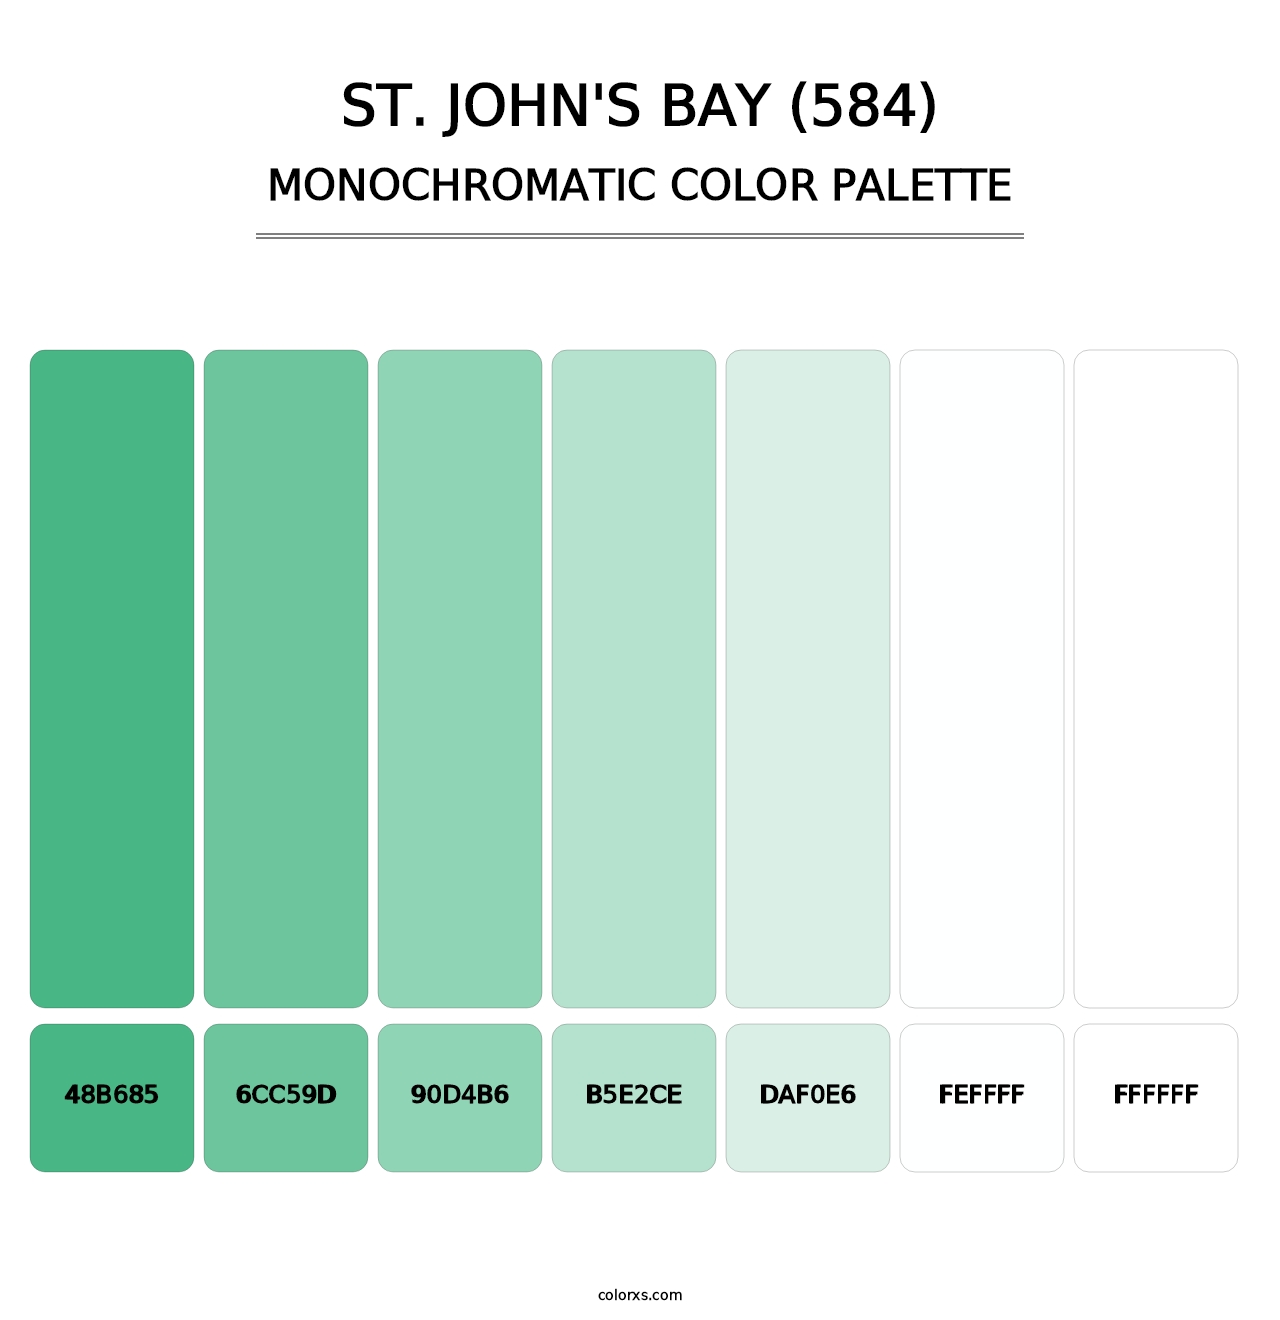 St. John's Bay (584) - Monochromatic Color Palette